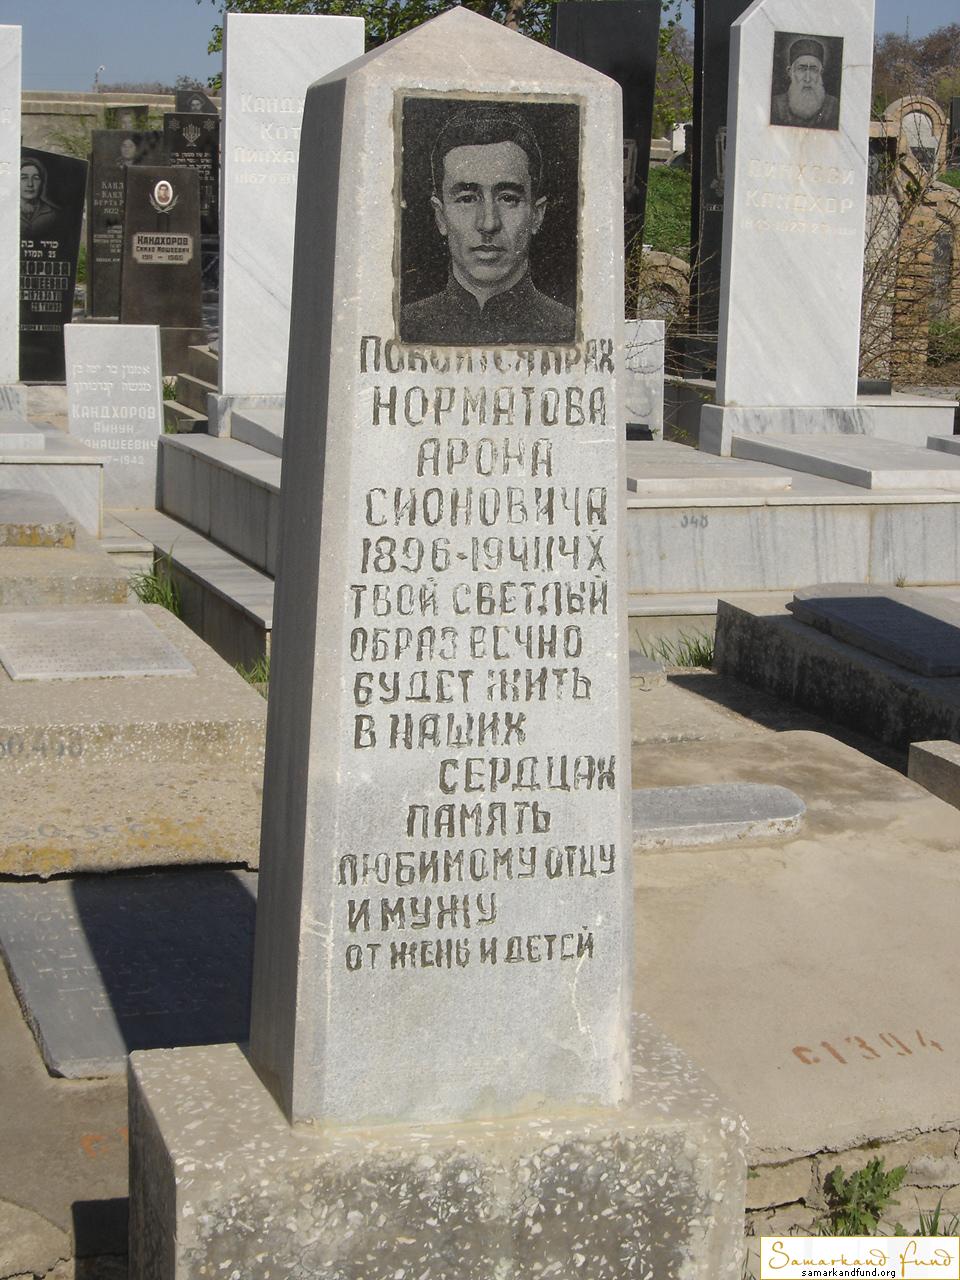 Норматов Арон Сионович  1896 - 14.10.1941 зах.200.126 №30.JPG